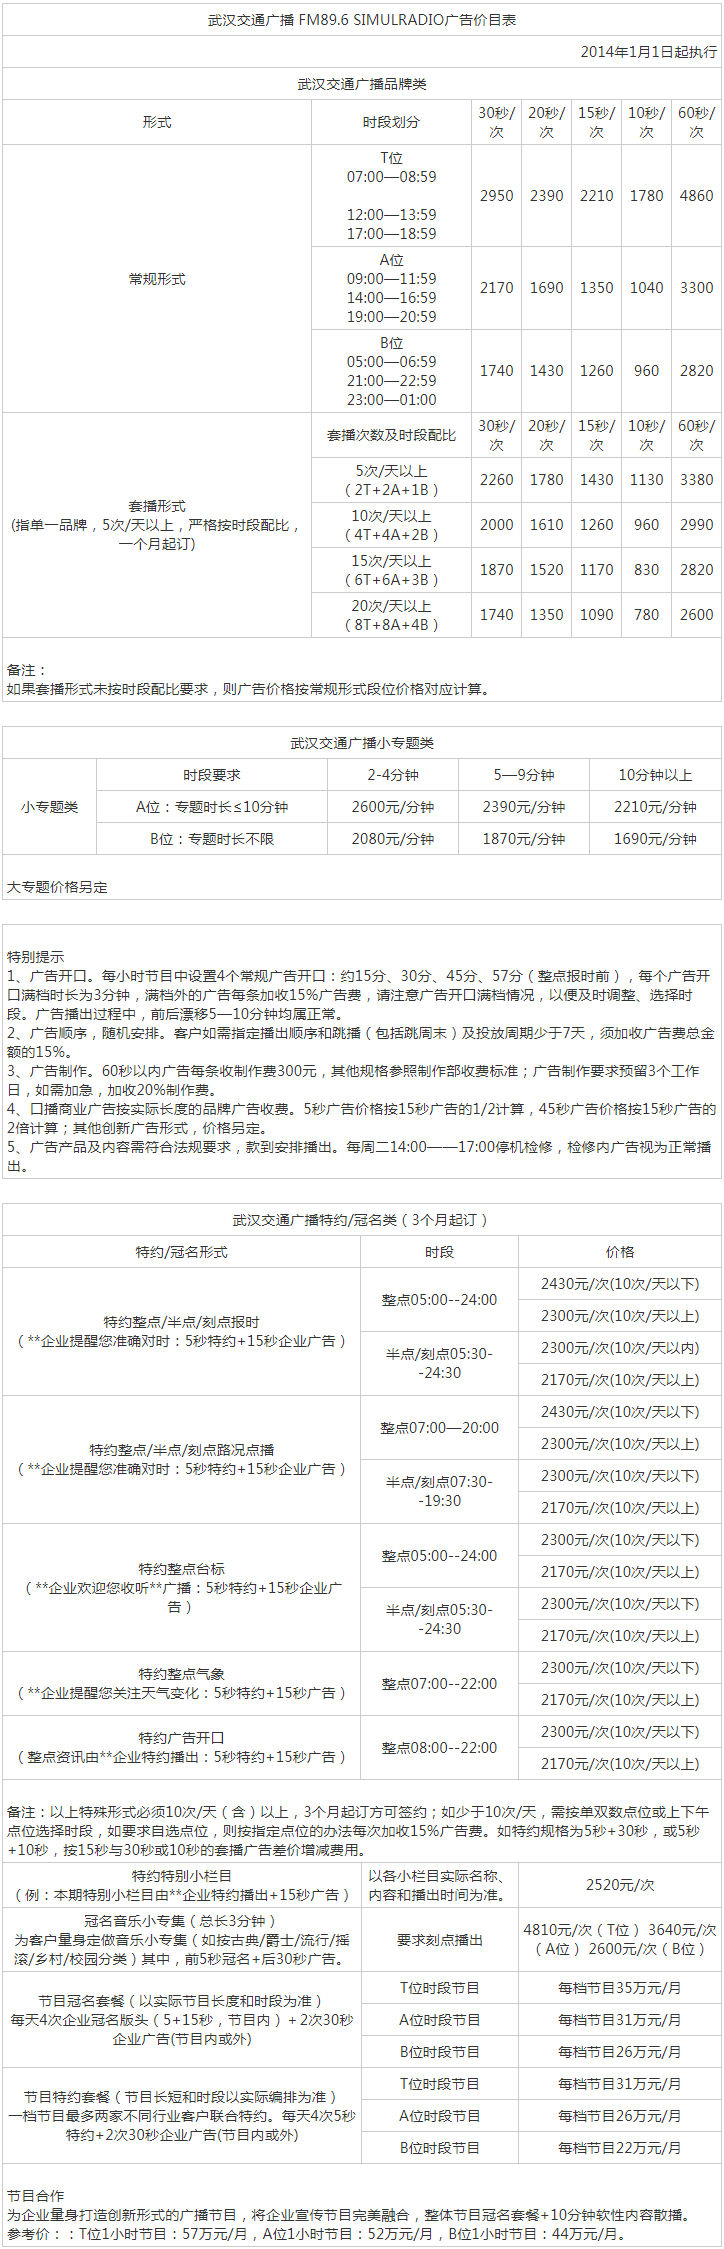 2013武汉人民广播电台交通广播 FM89.6、AM603广告报价表.png